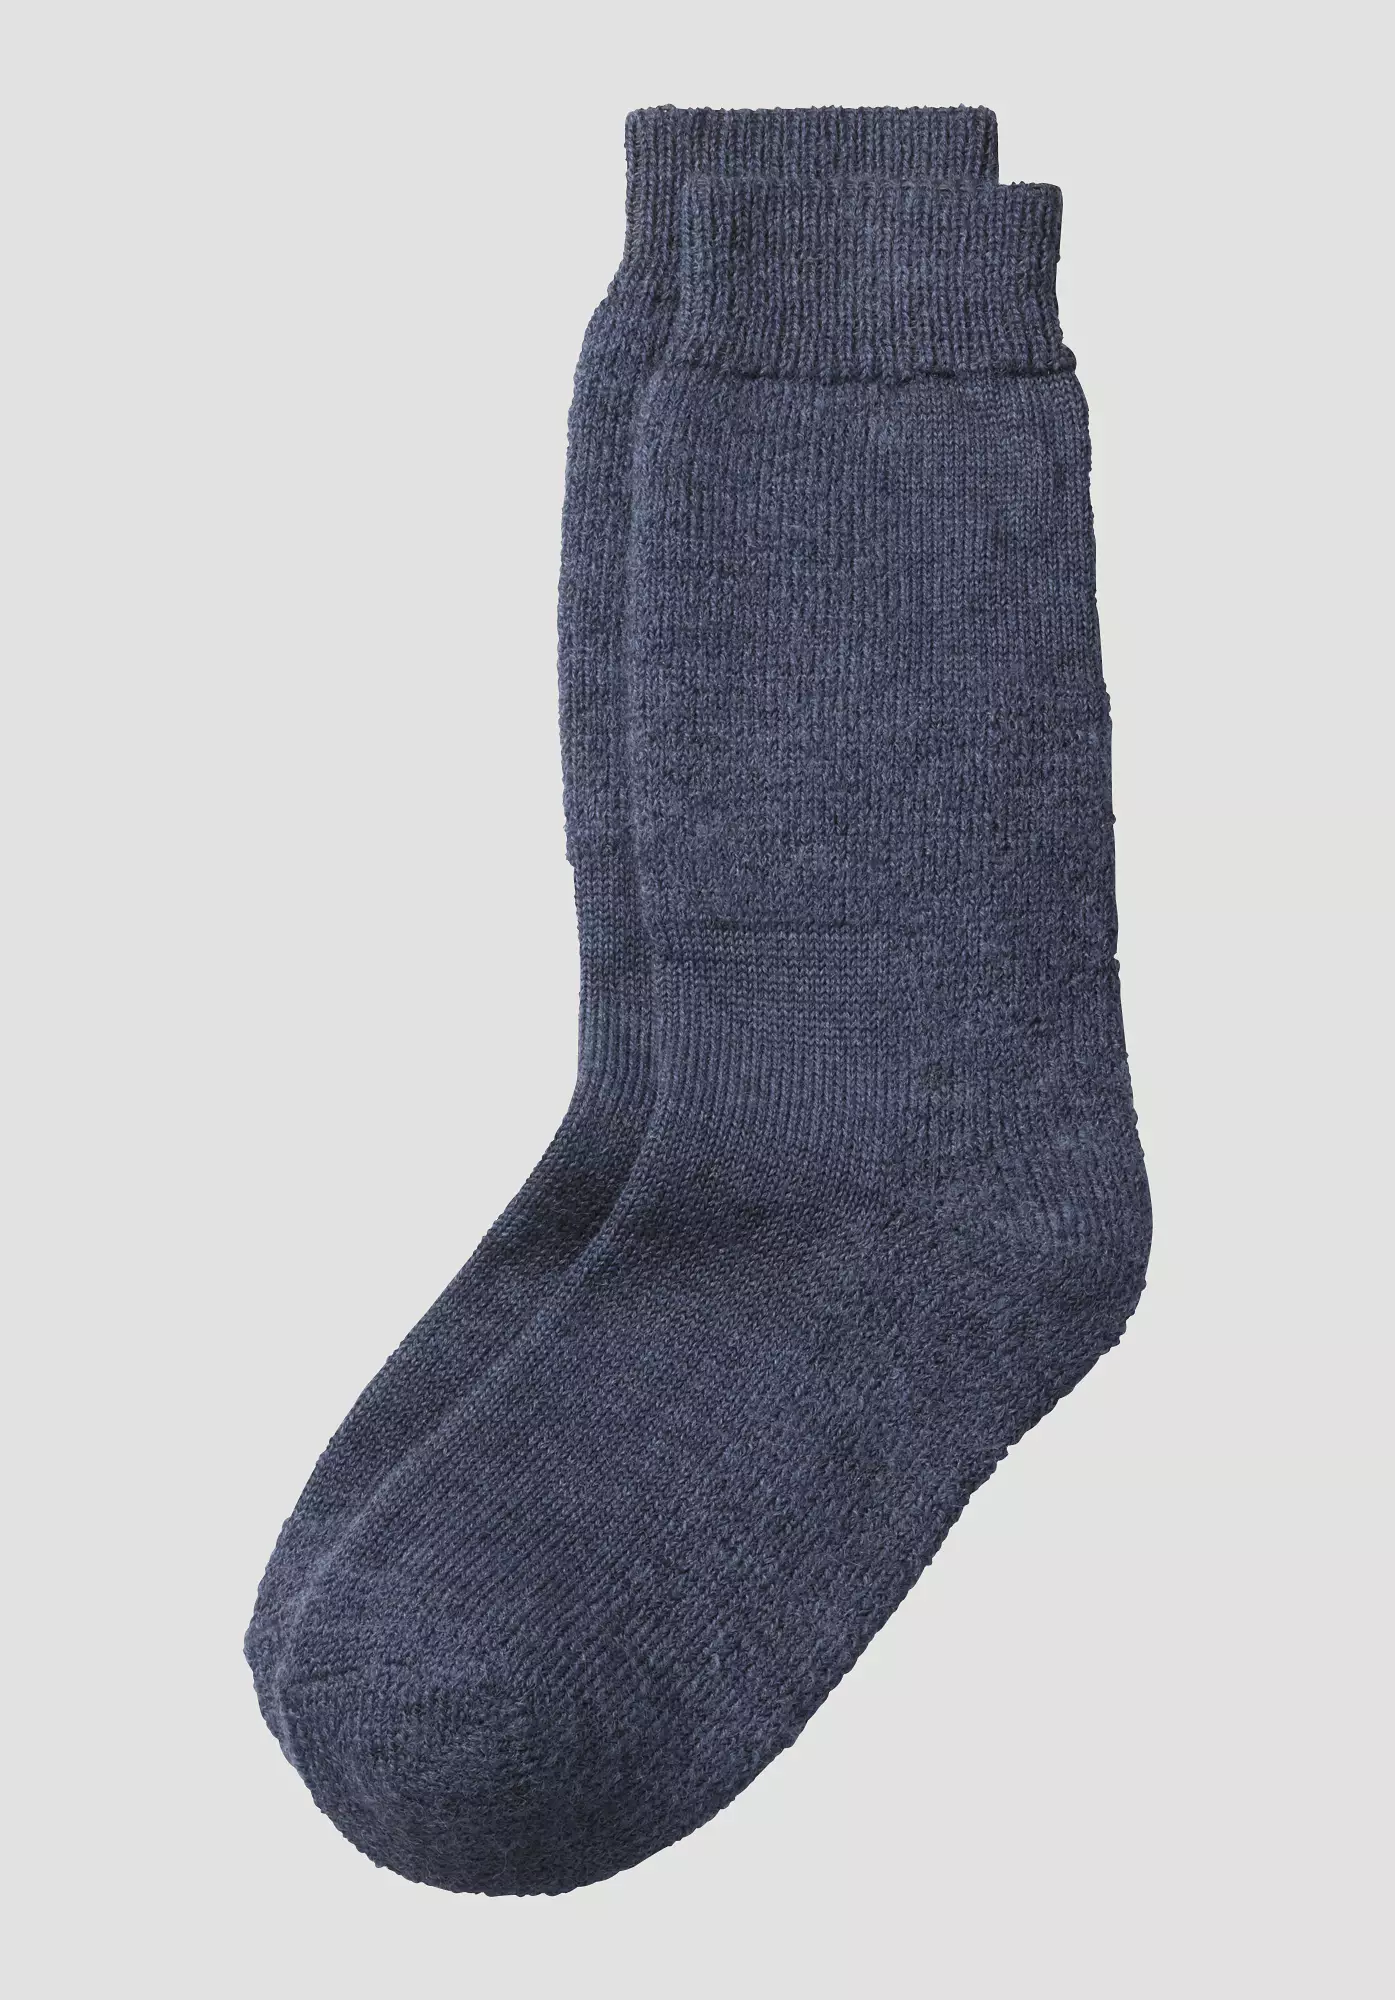 Hiking socks made from pure organic merino wool - 0